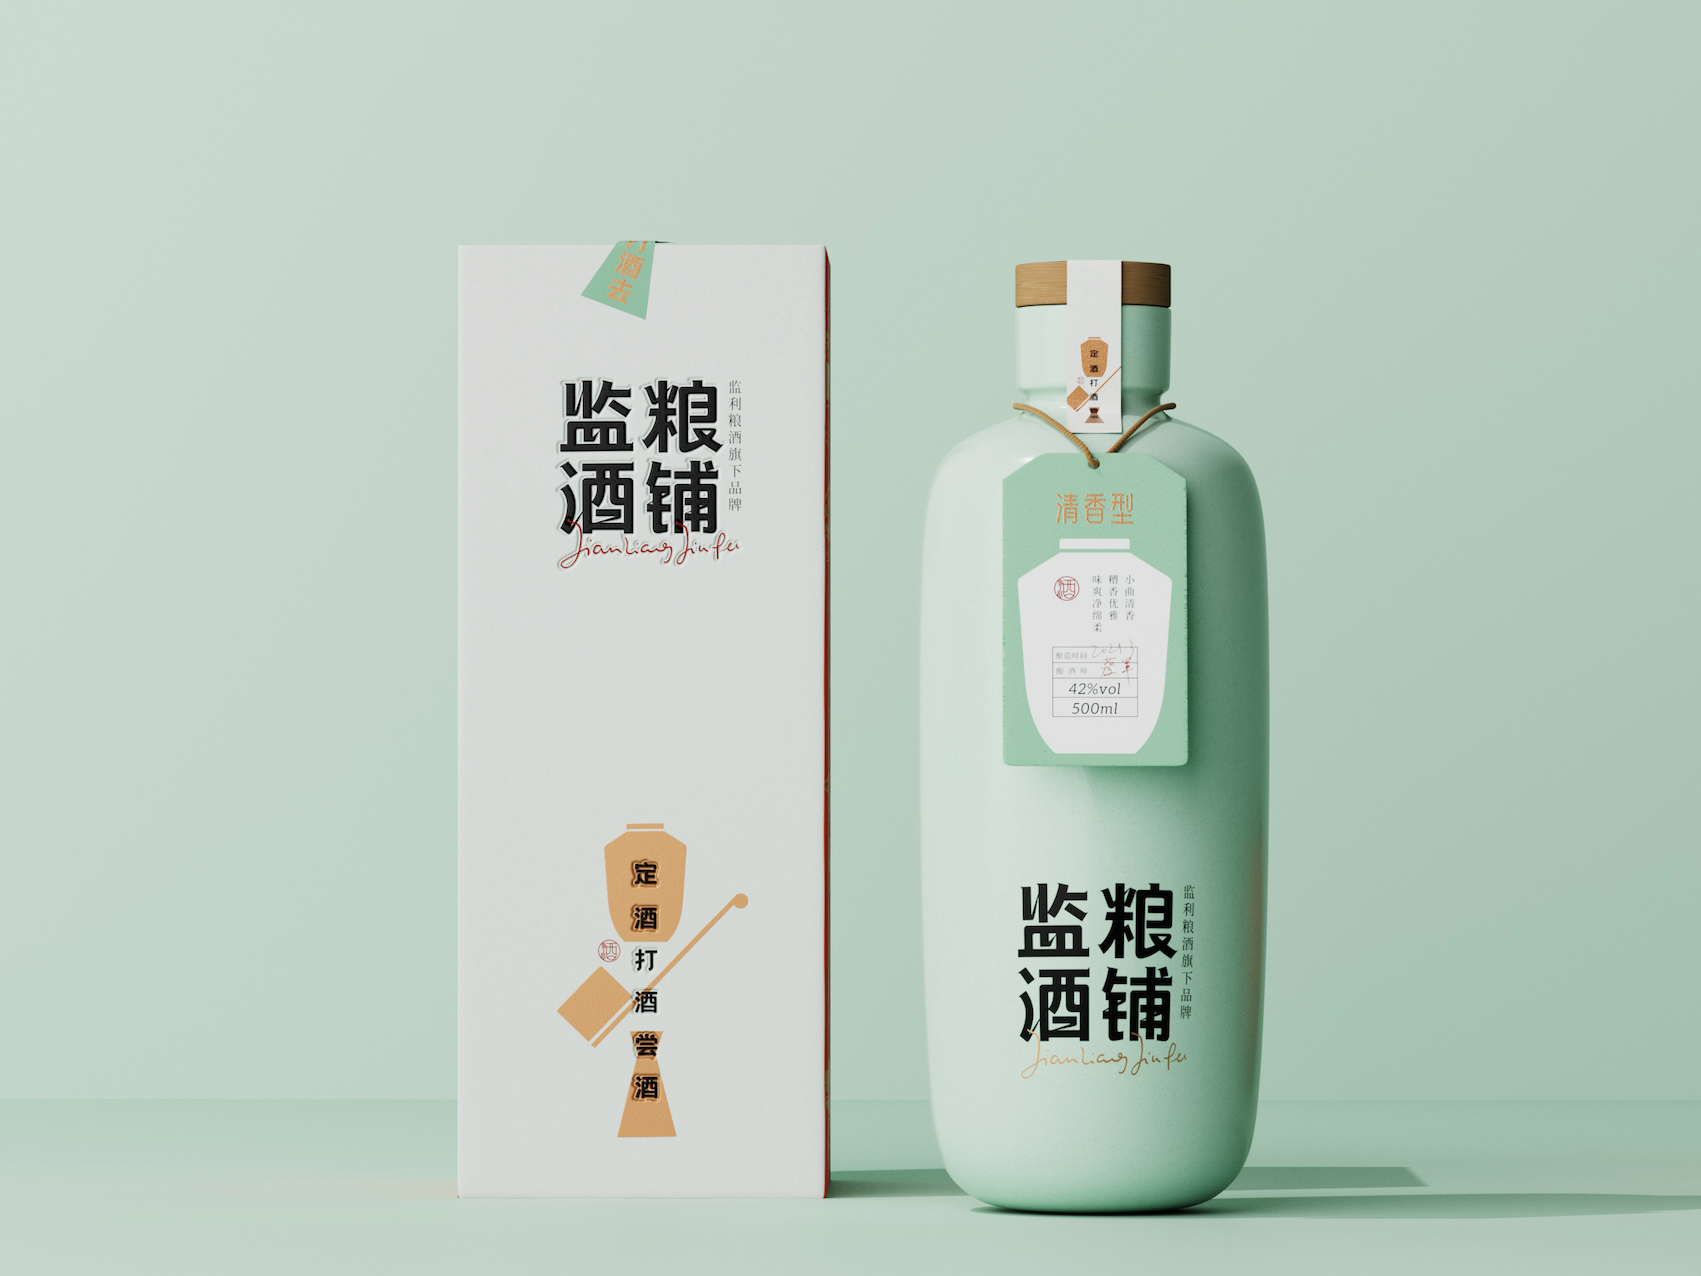 Brand Identity for Jianliang Liquor Store Designed by Riverside Design Studio